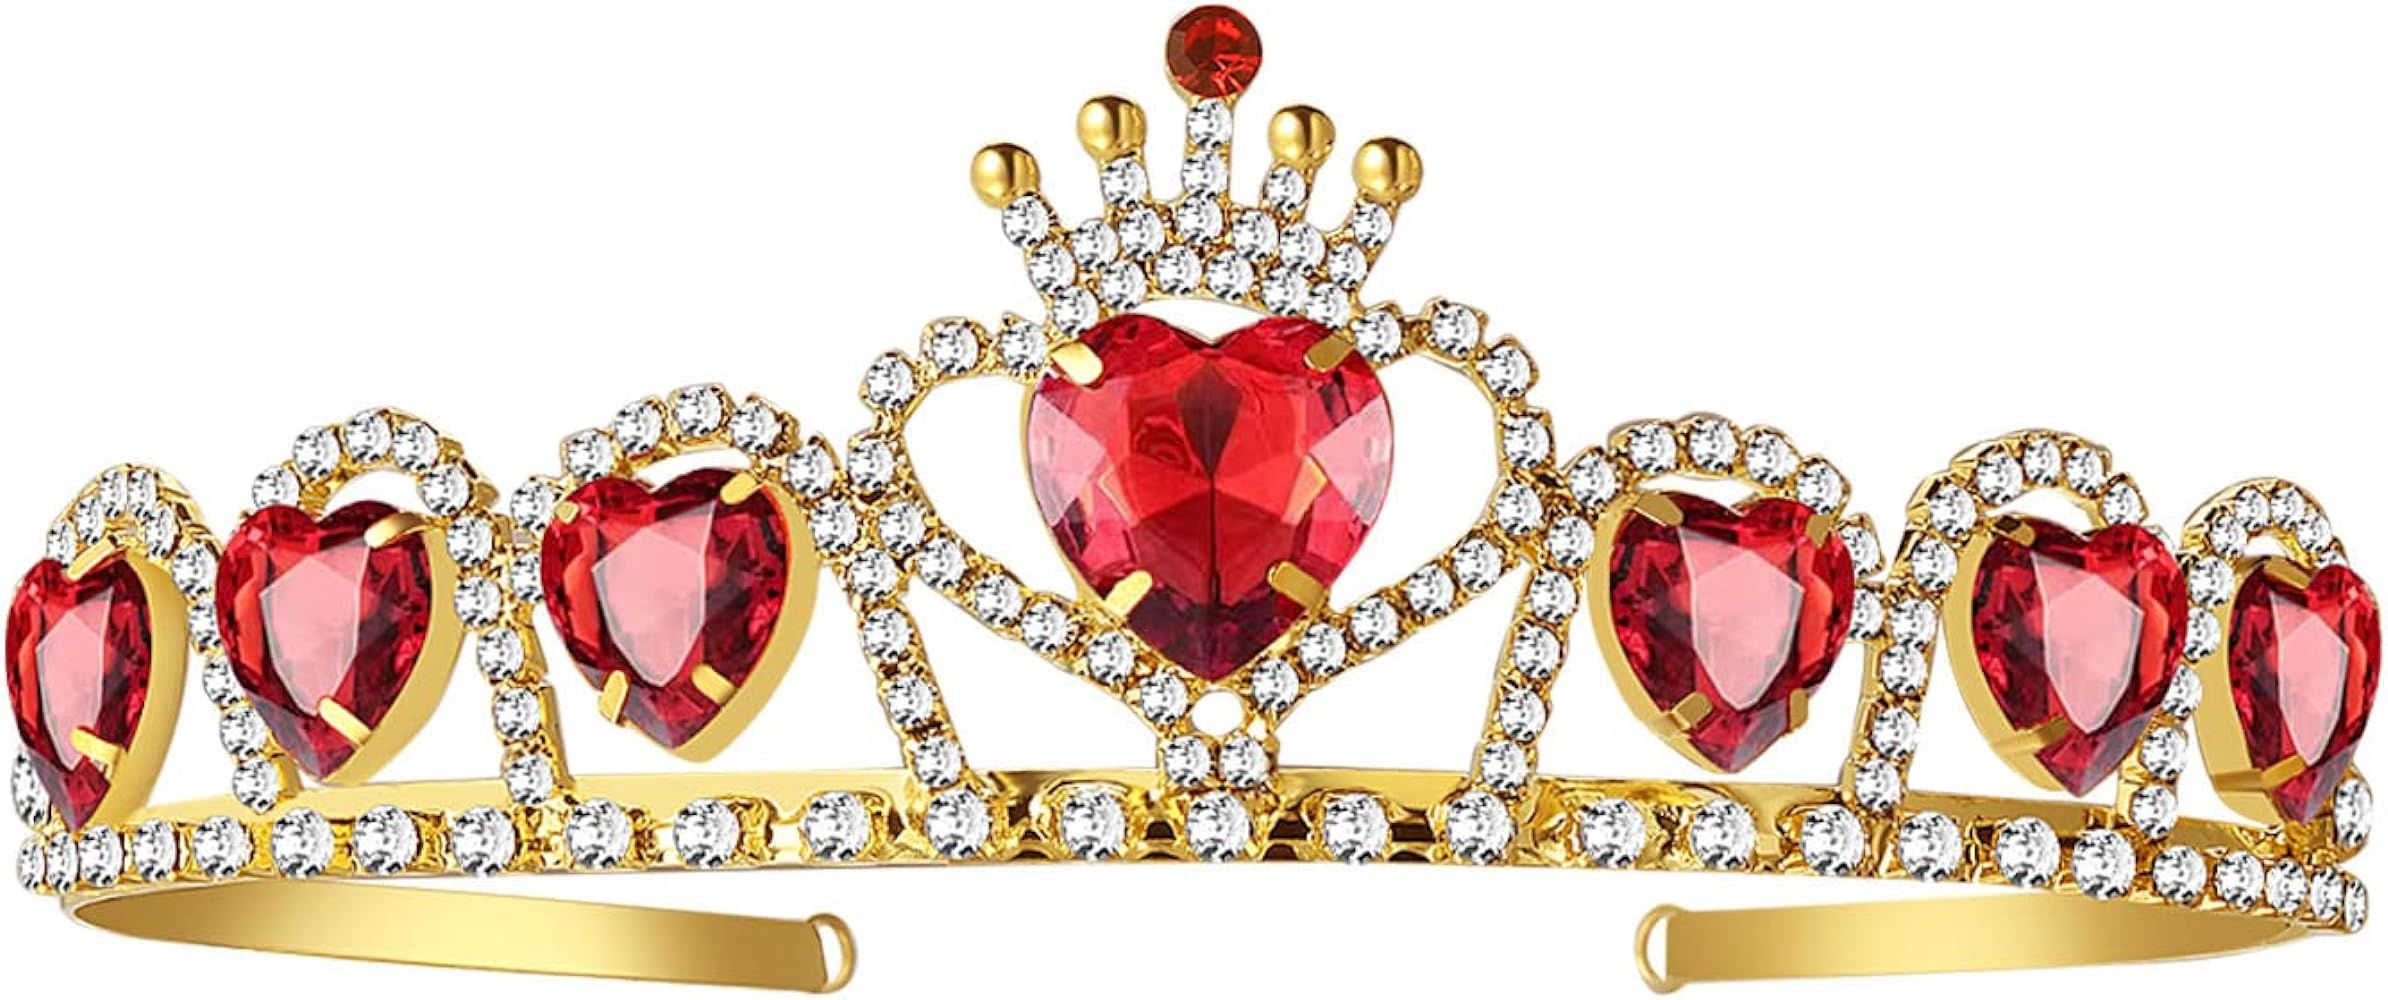 Queen of Hearts Crown Evie Red Heart Tiara Descendants 3, Gold Crown Jewelry Set Queen of Hearts ... | Amazon (US)